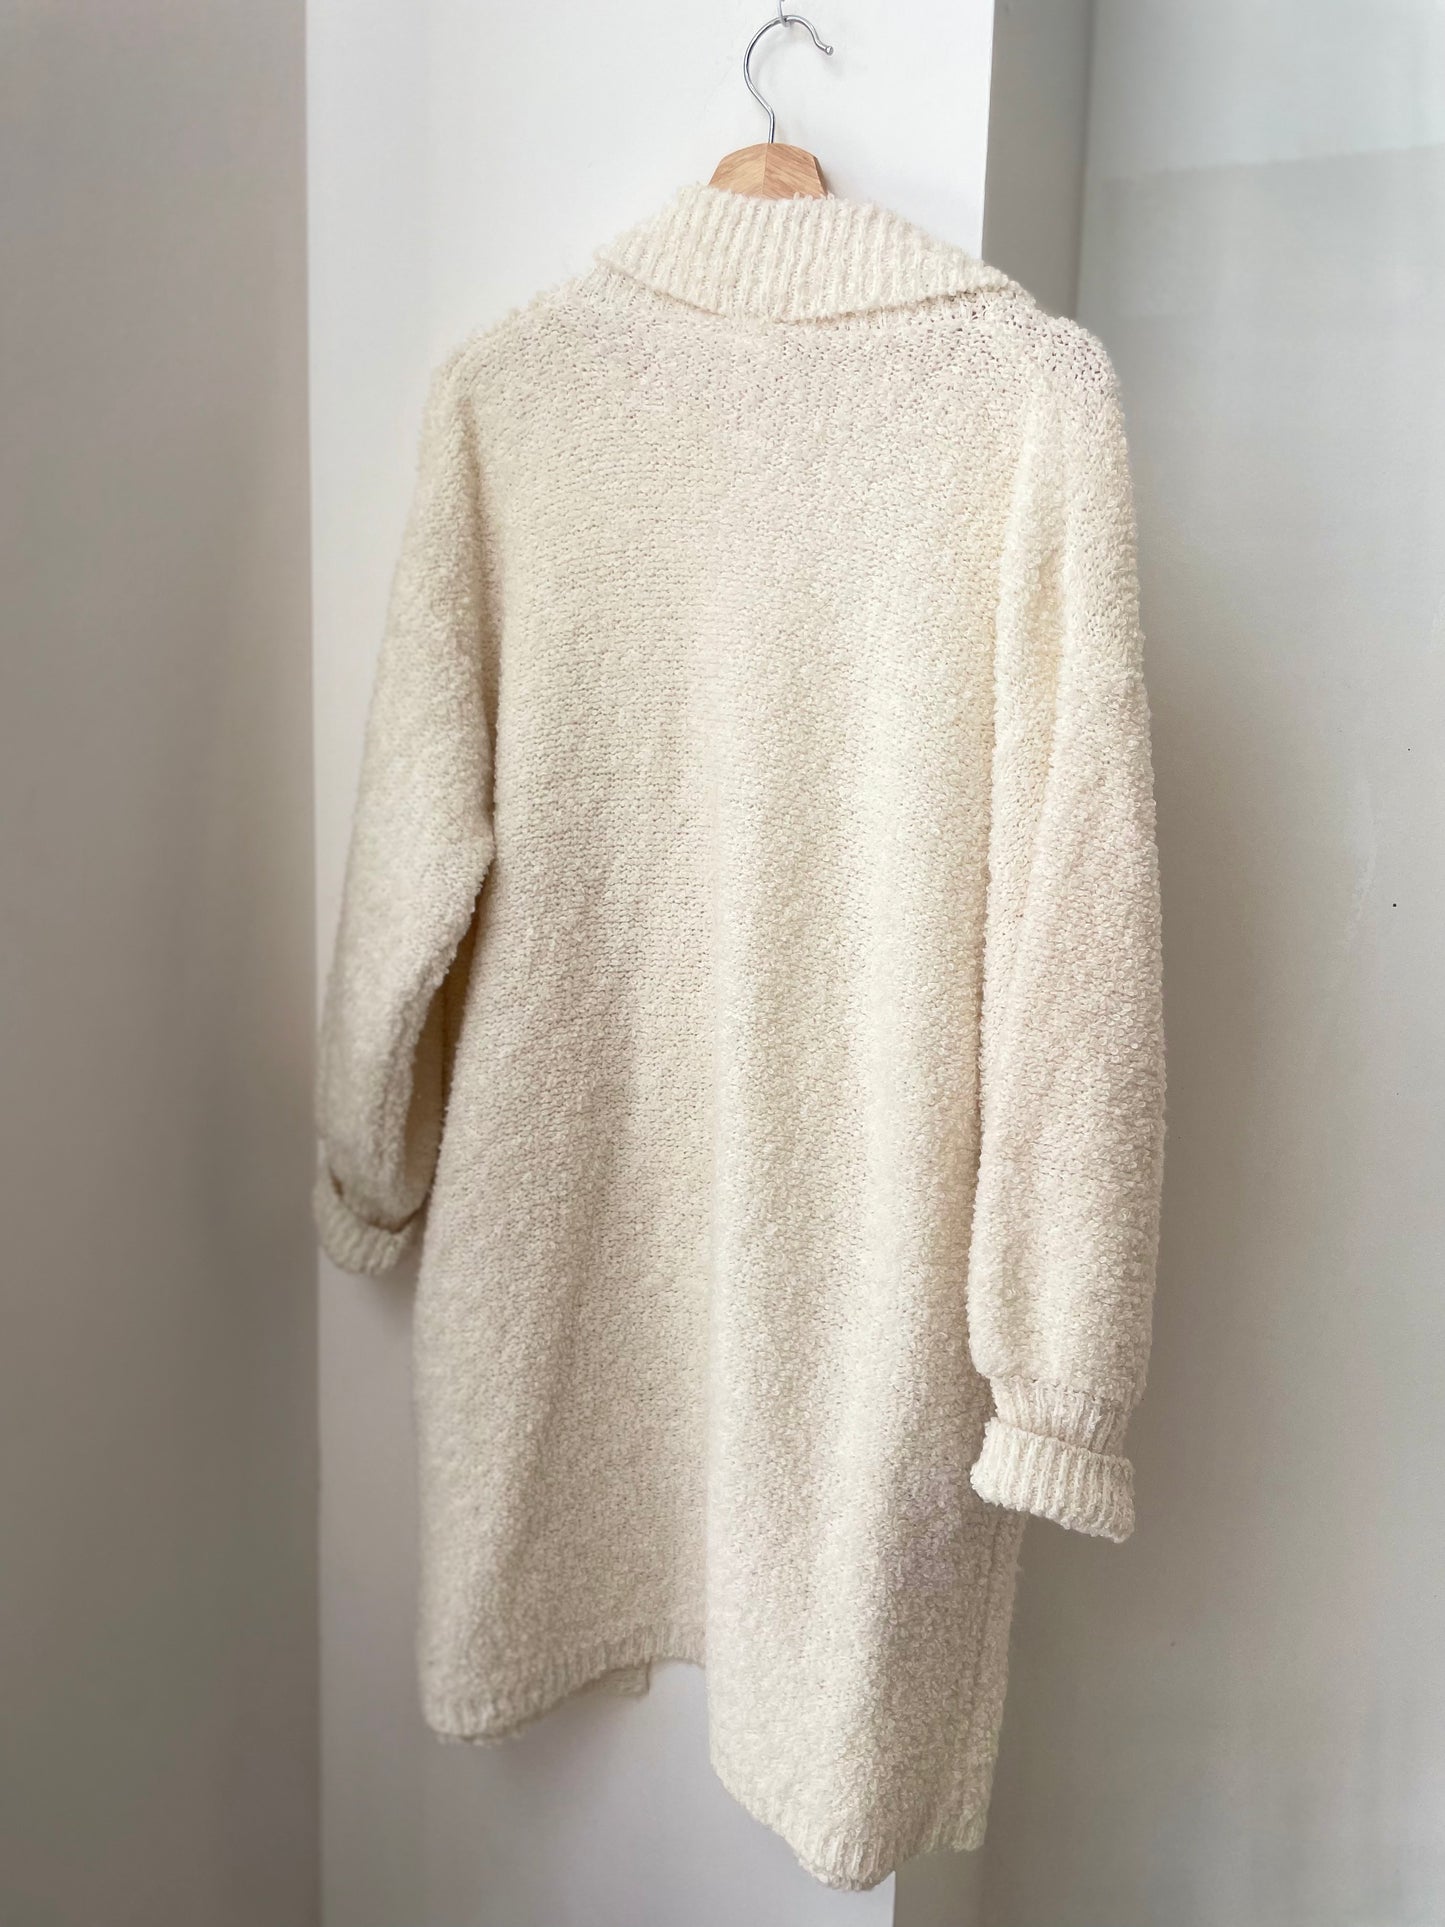 Ivory Boucle Knit Cardigan Sweater w/ Pockets | Large-XLarge